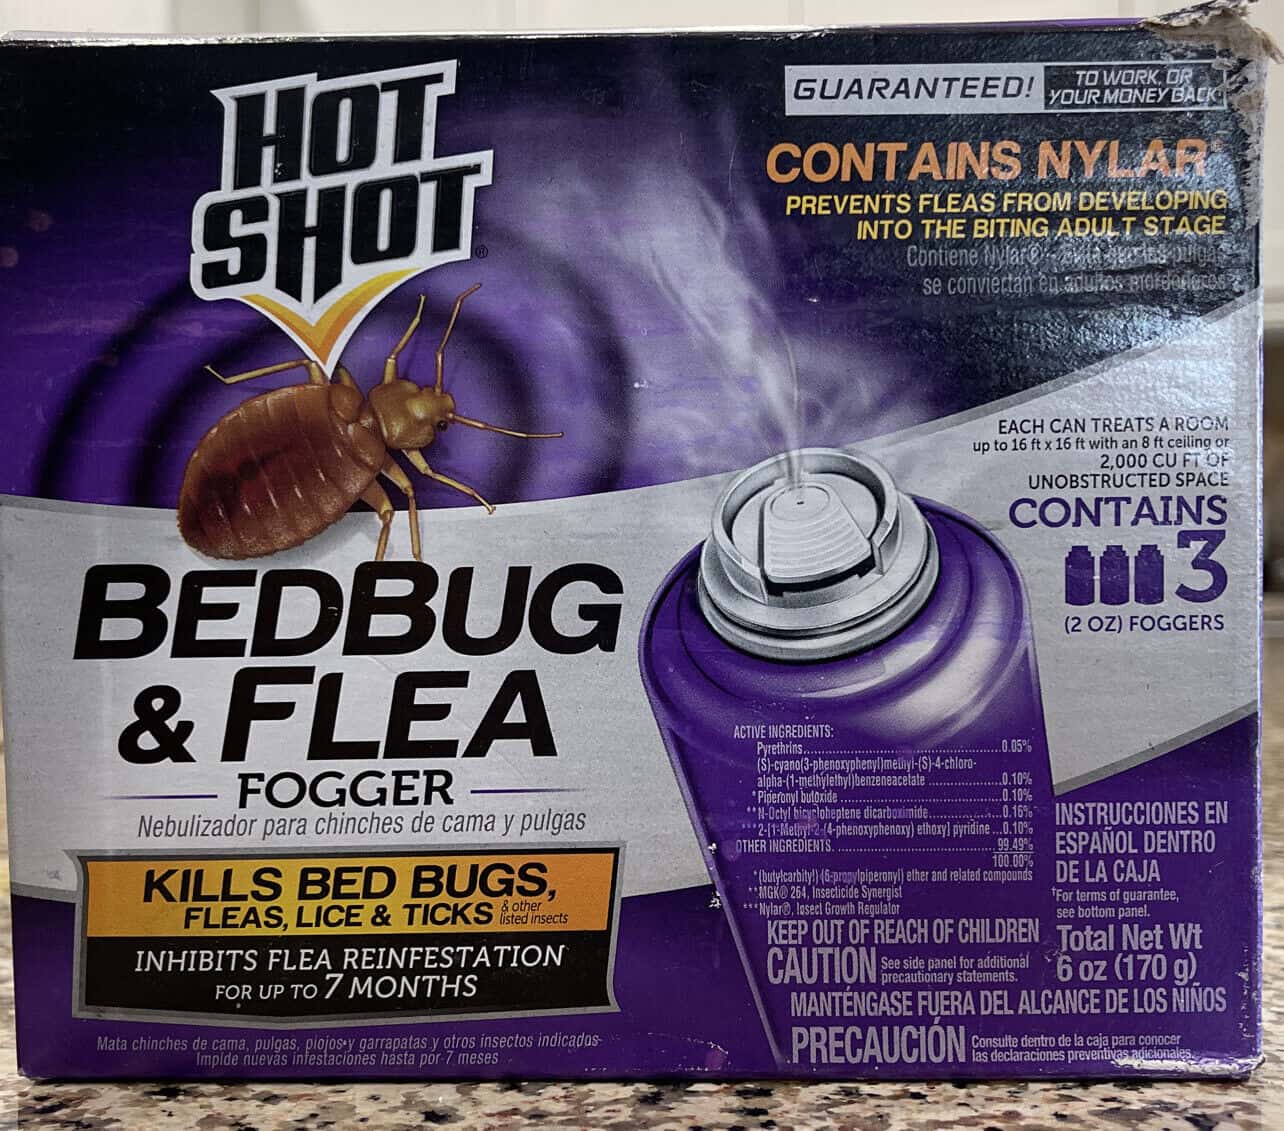 Consider a flea bomb 1